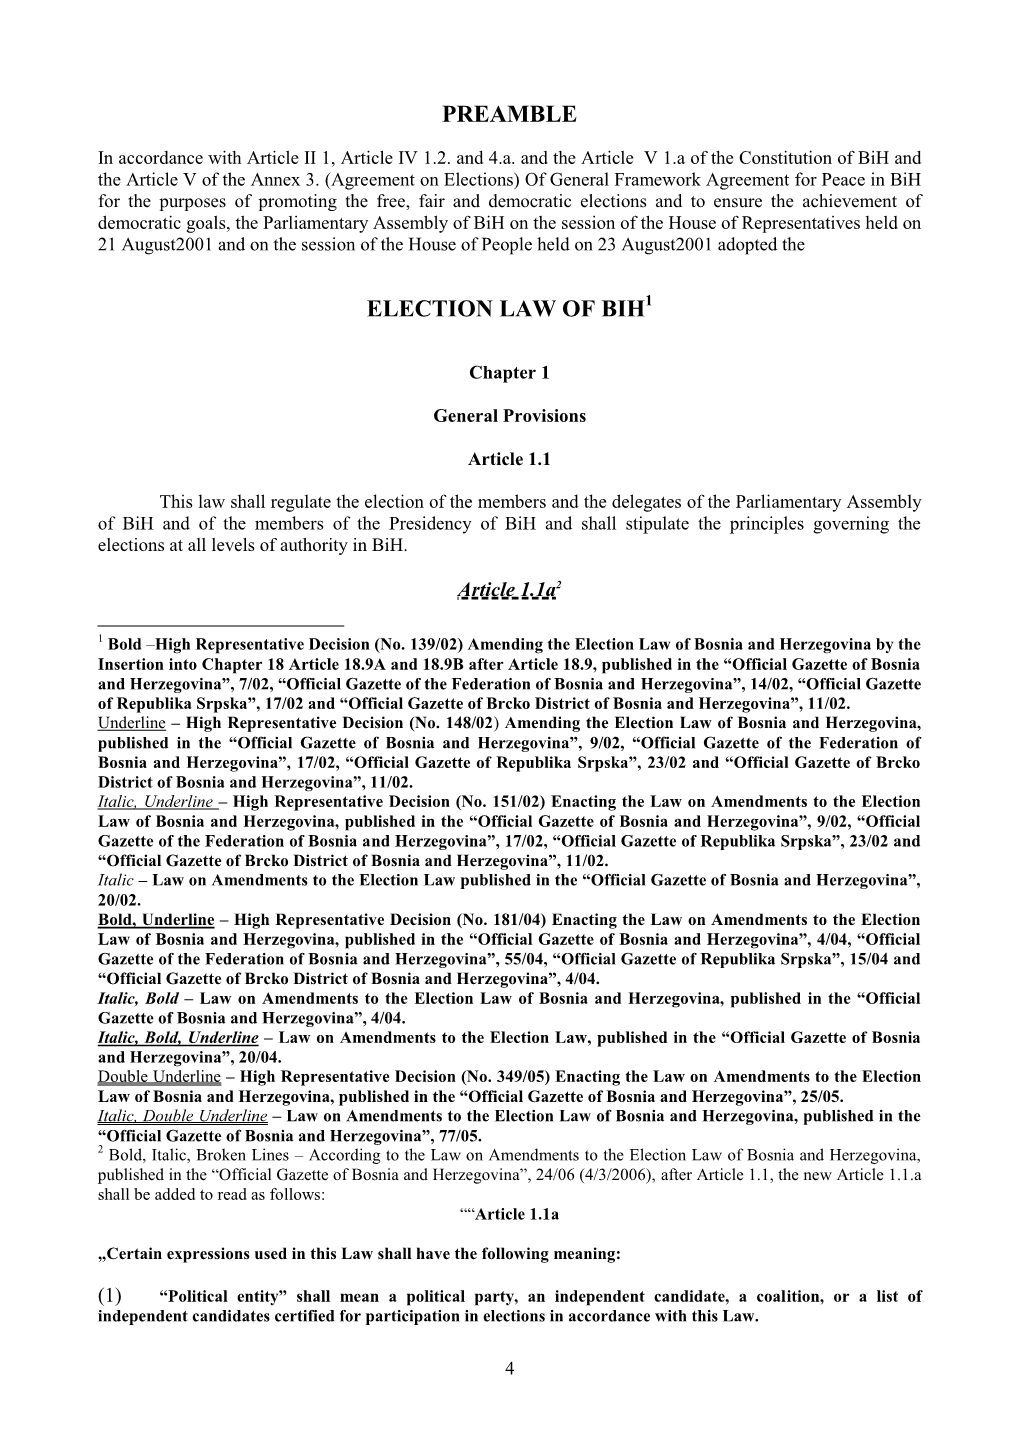 Election Law of Bosnia & Herzegovina (English)